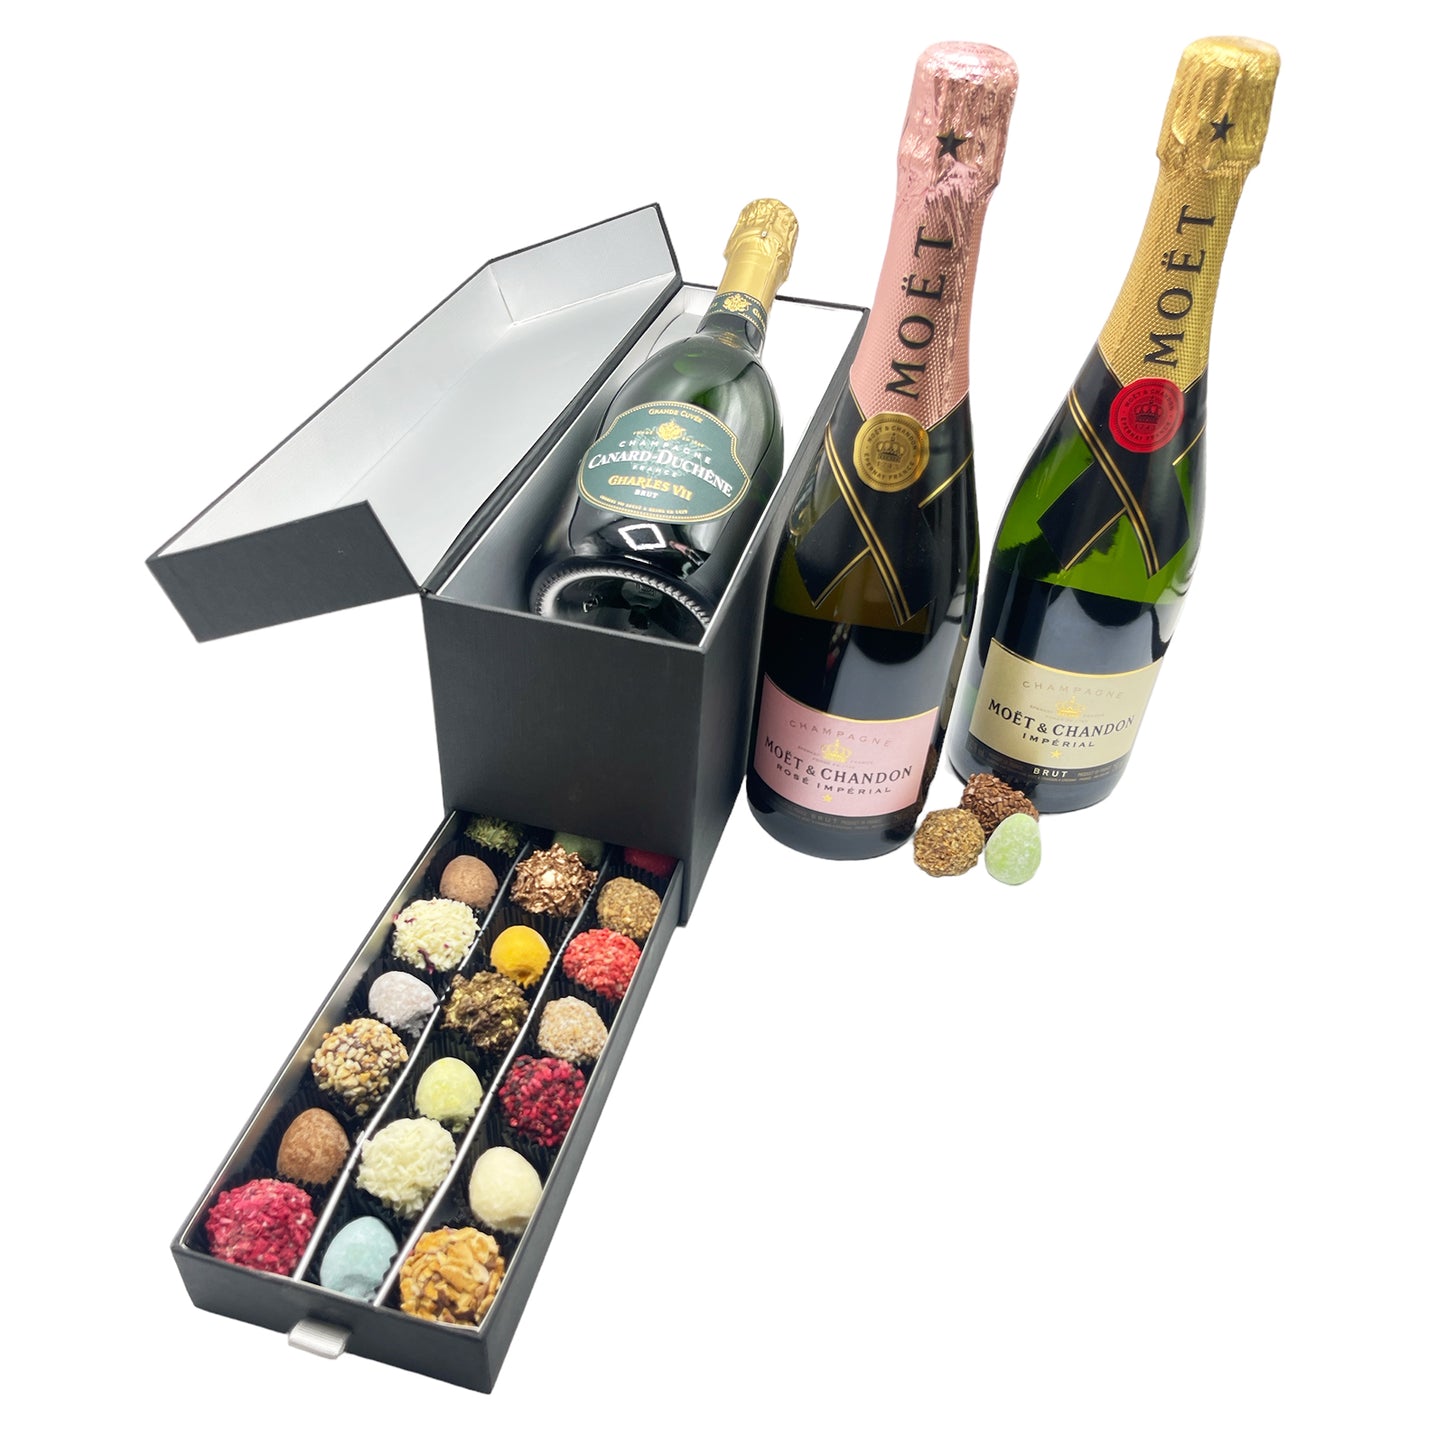 
                  
                    Champagne en Chocolade in ladeboxen met Winter Holiday design
                  
                